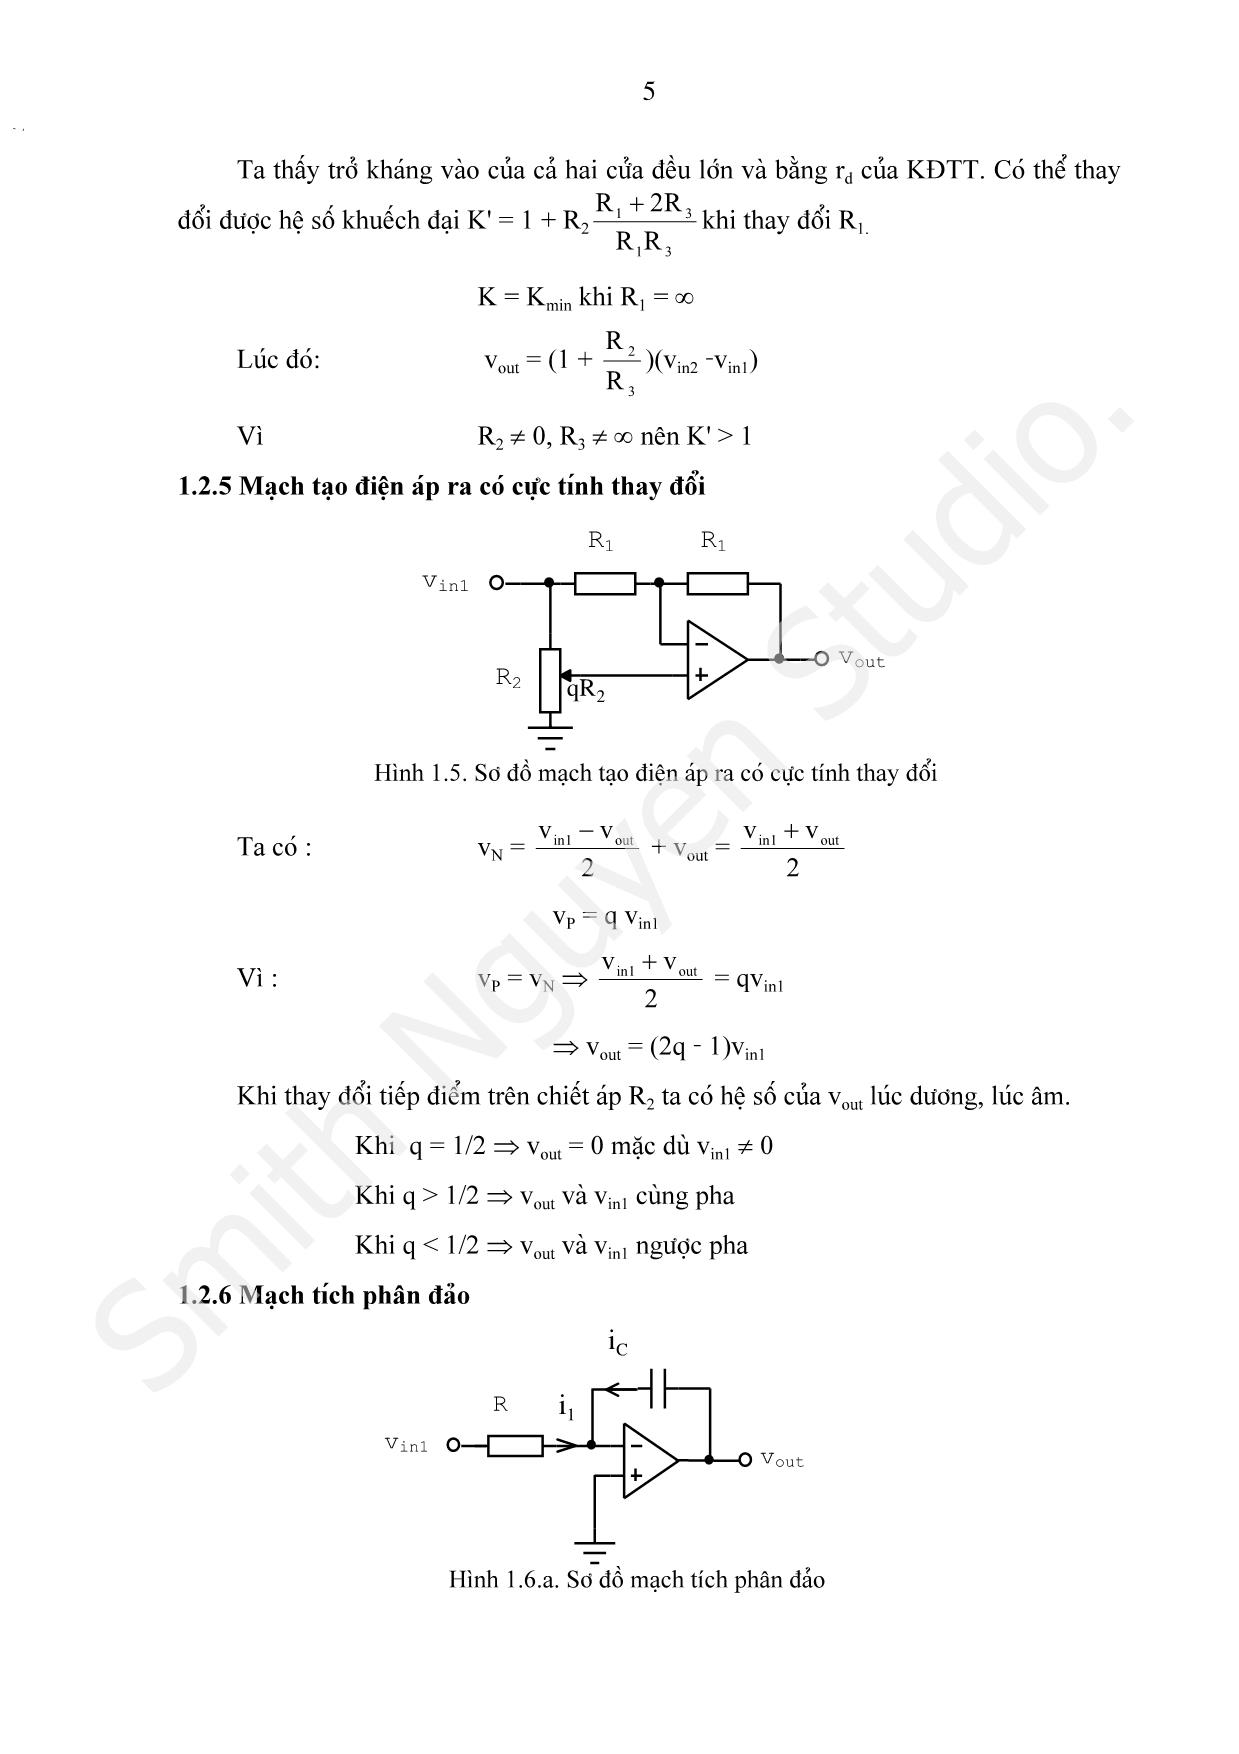 Bài giảng Các mạch tính toán, điều khiển và tạo hàm dùng khuếch đại thuật toán trang 5